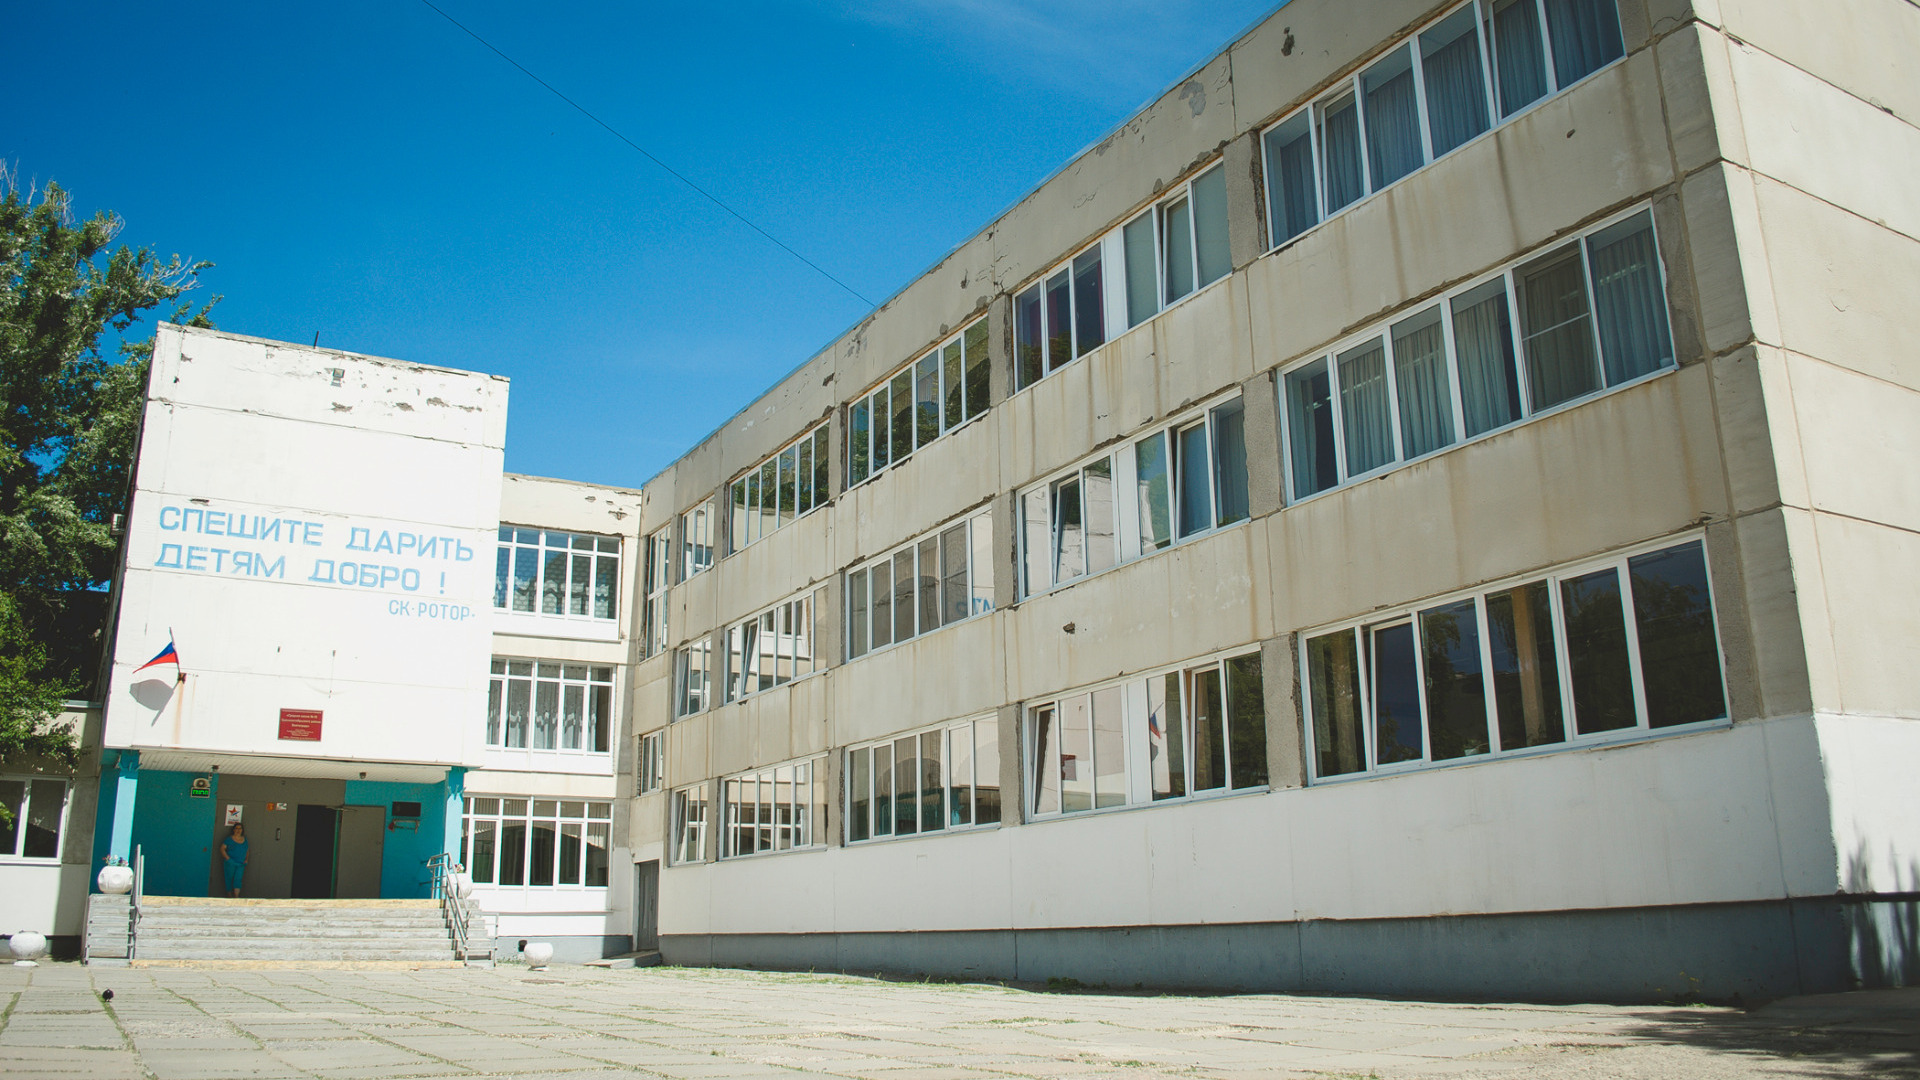 Действия школ при угрозе терактов проверят в Волгограде